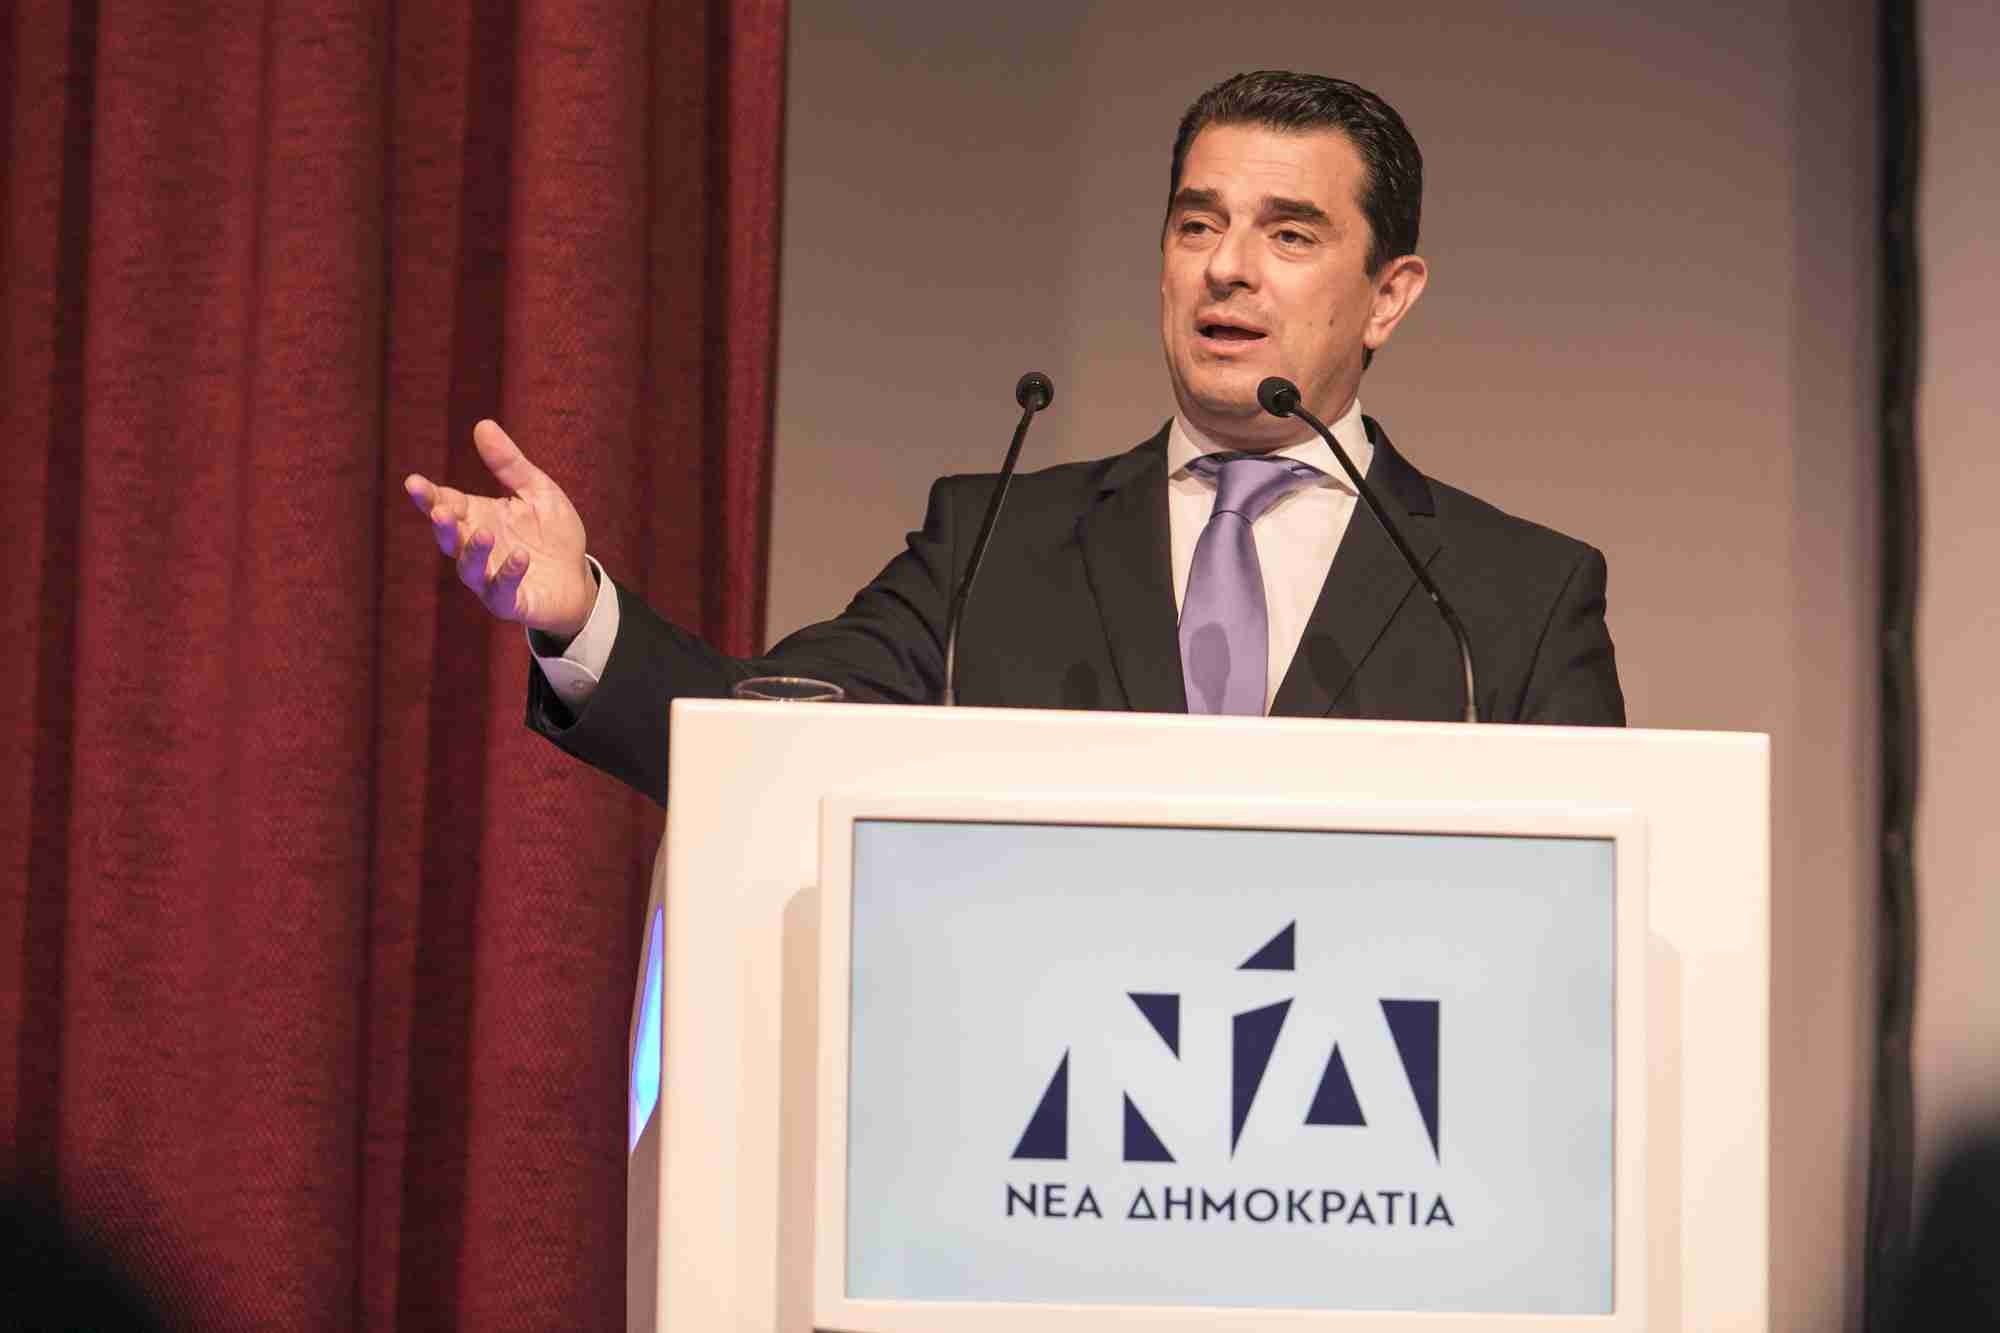 Κ. Σκρέκας: "Ξεκινάμε αμέσως δουλειά για να πάμε την Ελλάδα μπροστά" 